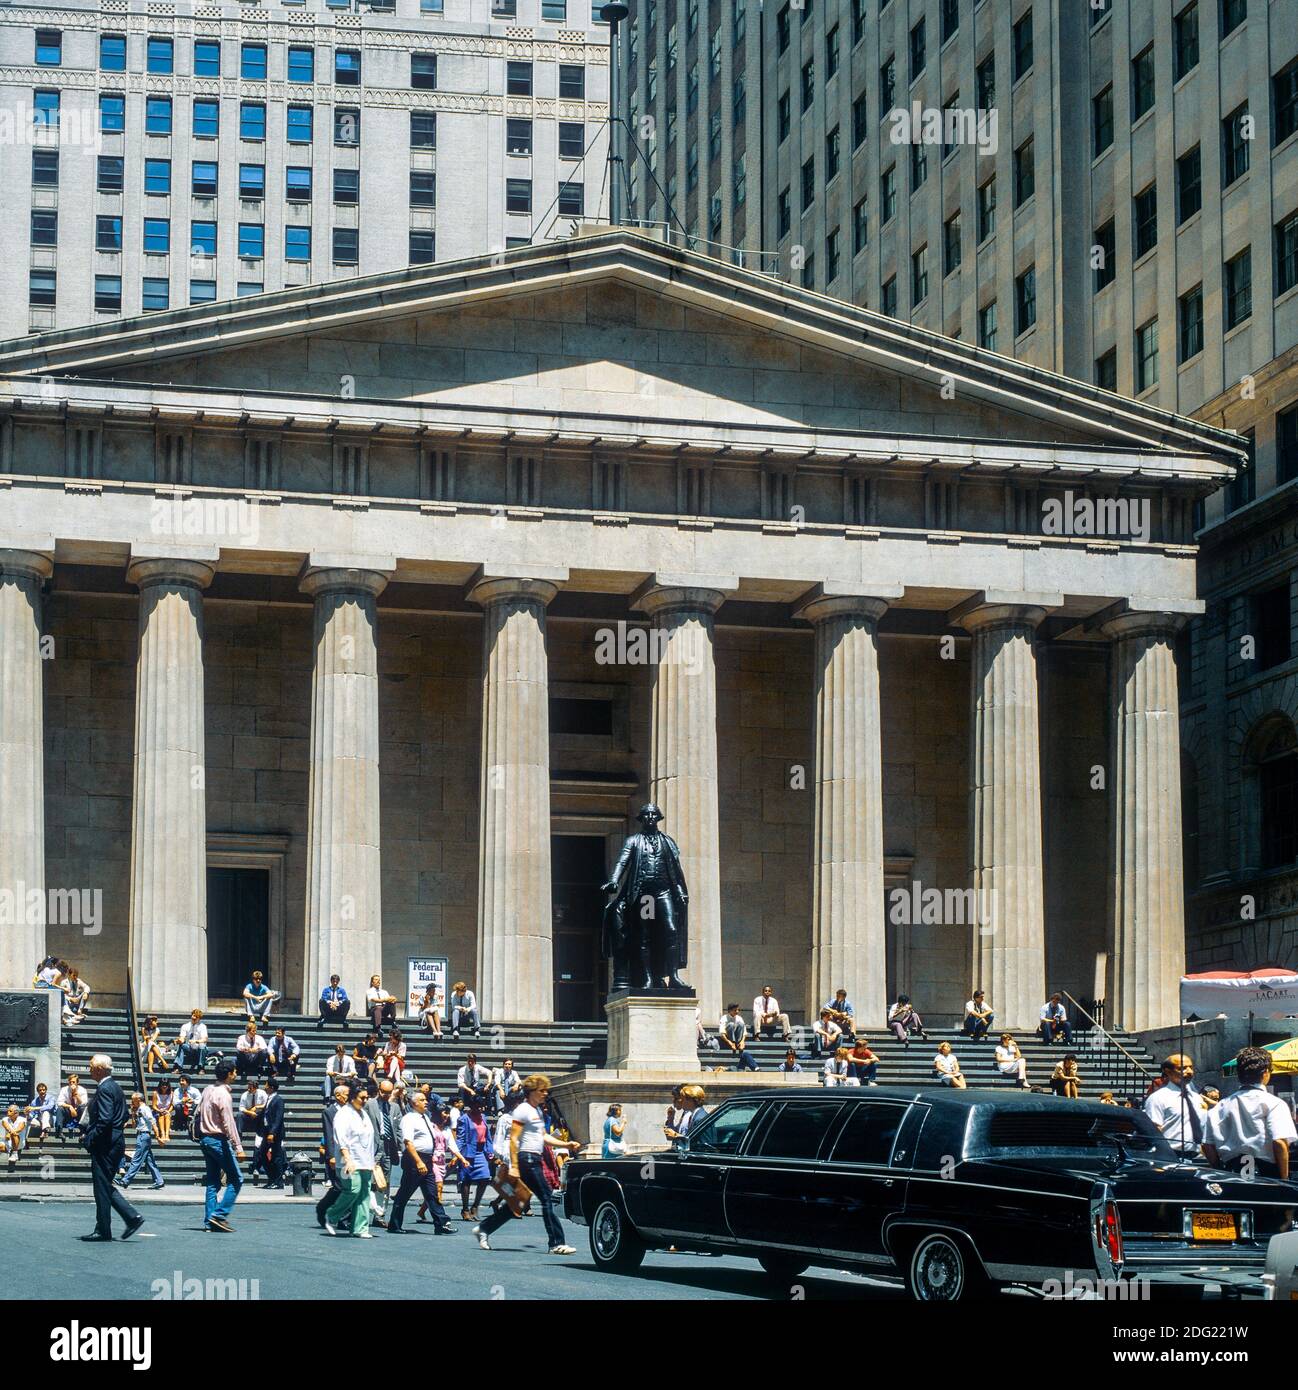 New York 1985, Federal Hall, statue de George Washington, limousine noire, personnes, Quartier financier de Wall Street, Lower Manhattan, New York City, NY, NYC, ÉTATS-UNIS, Banque D'Images